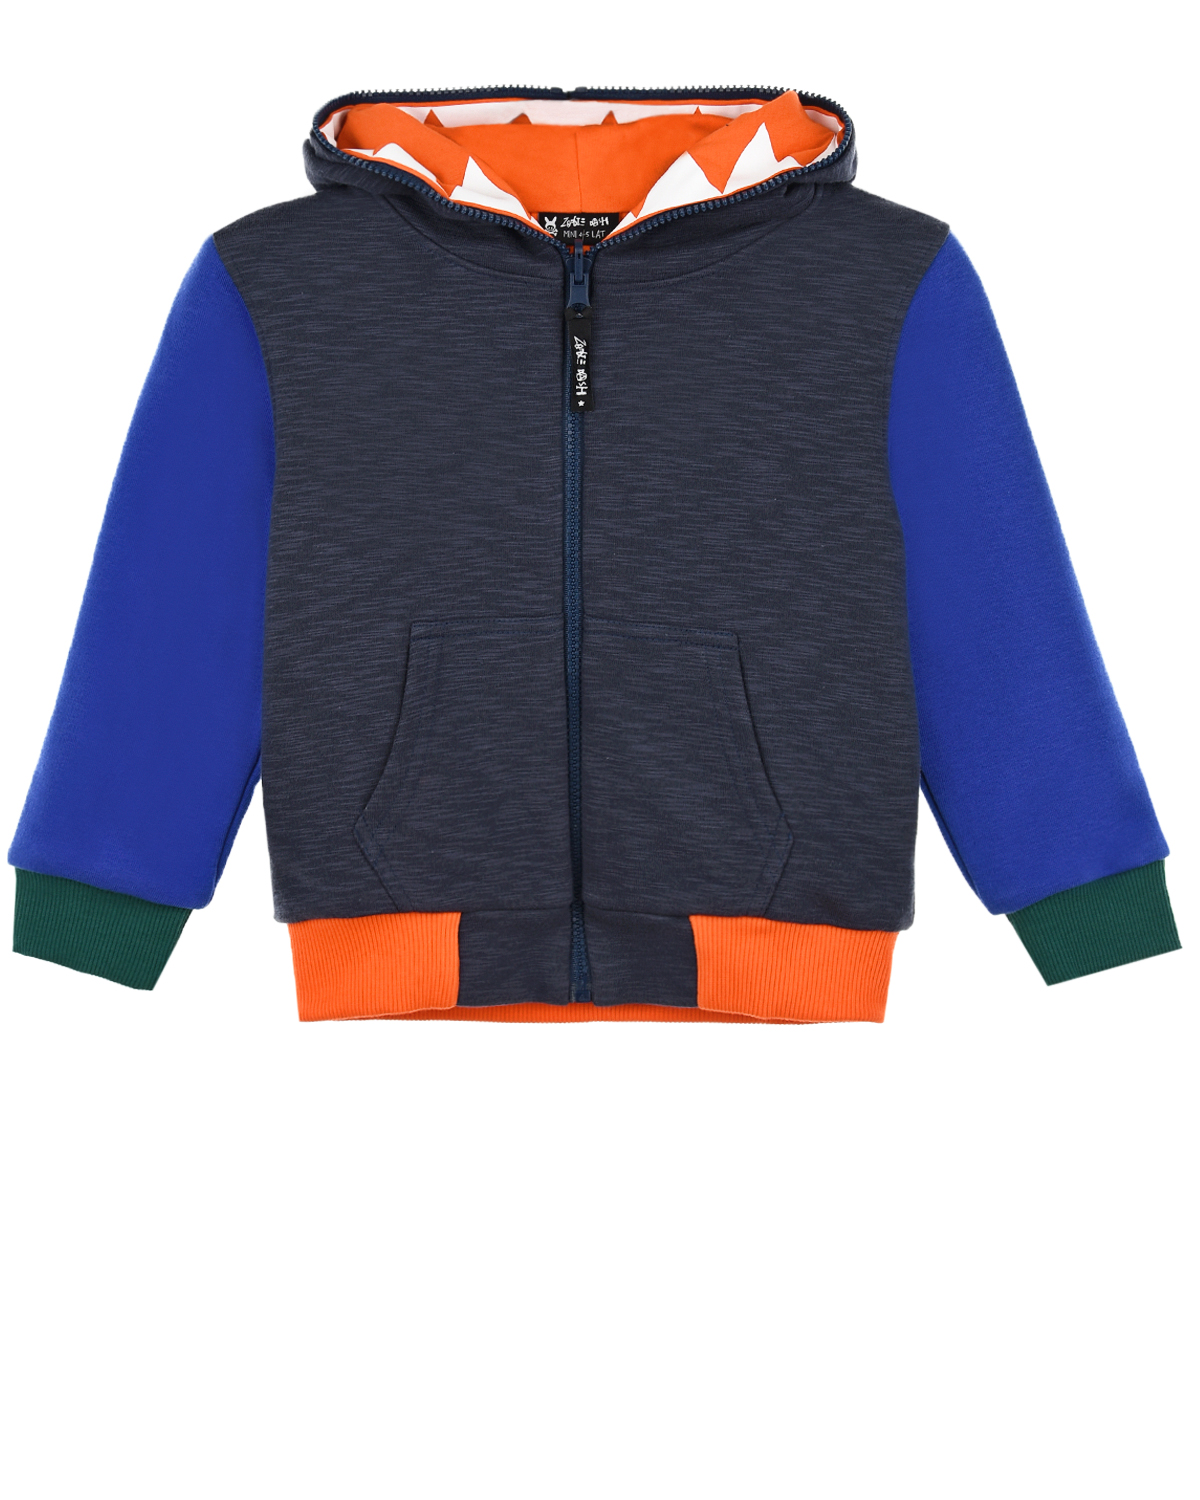 Двухсторонняя спортивная куртка Zombie Dash детская, размер 104, цвет мультиколор - фото 1